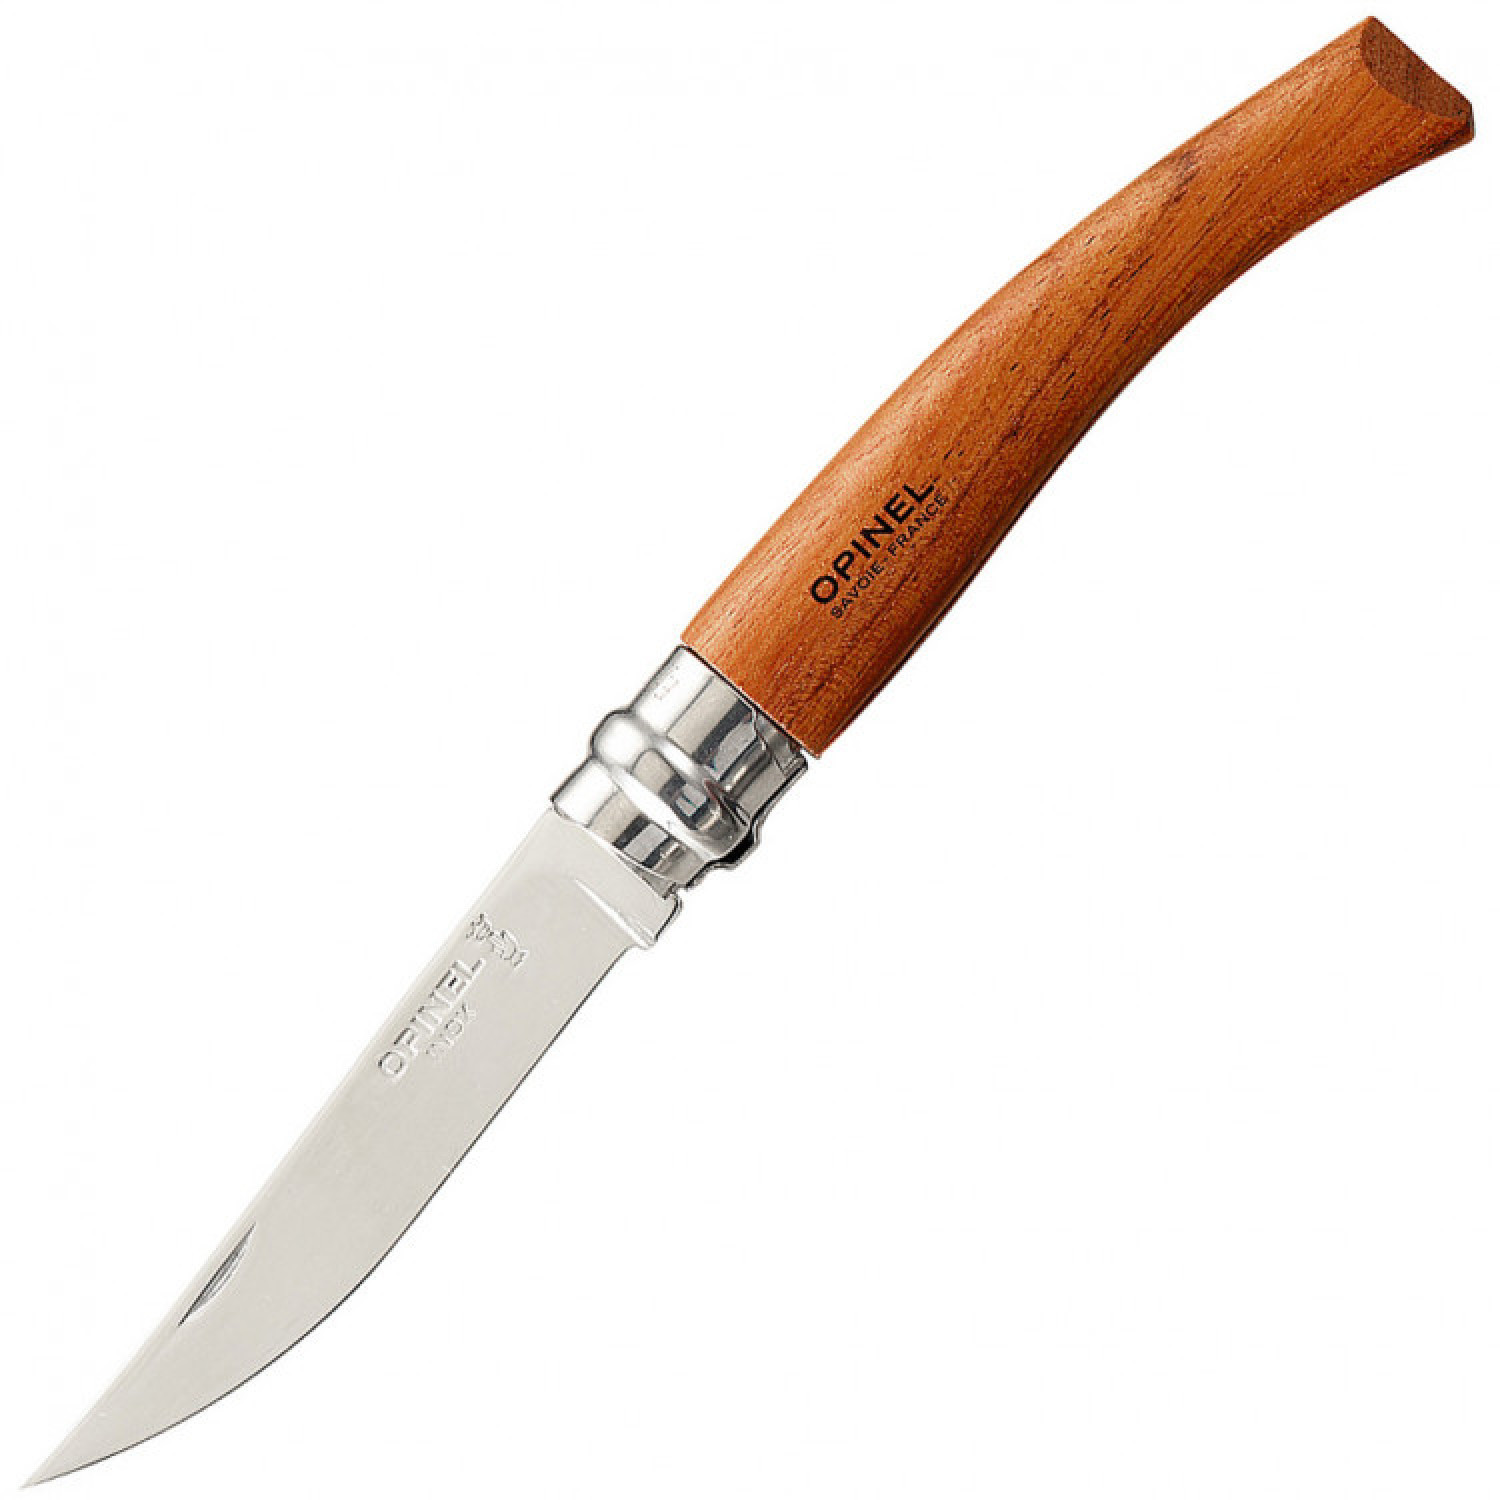 Нож складной филейный Opinel №8 VRI Folding Slim Bubinga, сталь Sandvik 12C27, рукоять из дерева бубинго, 000015 - фото 1